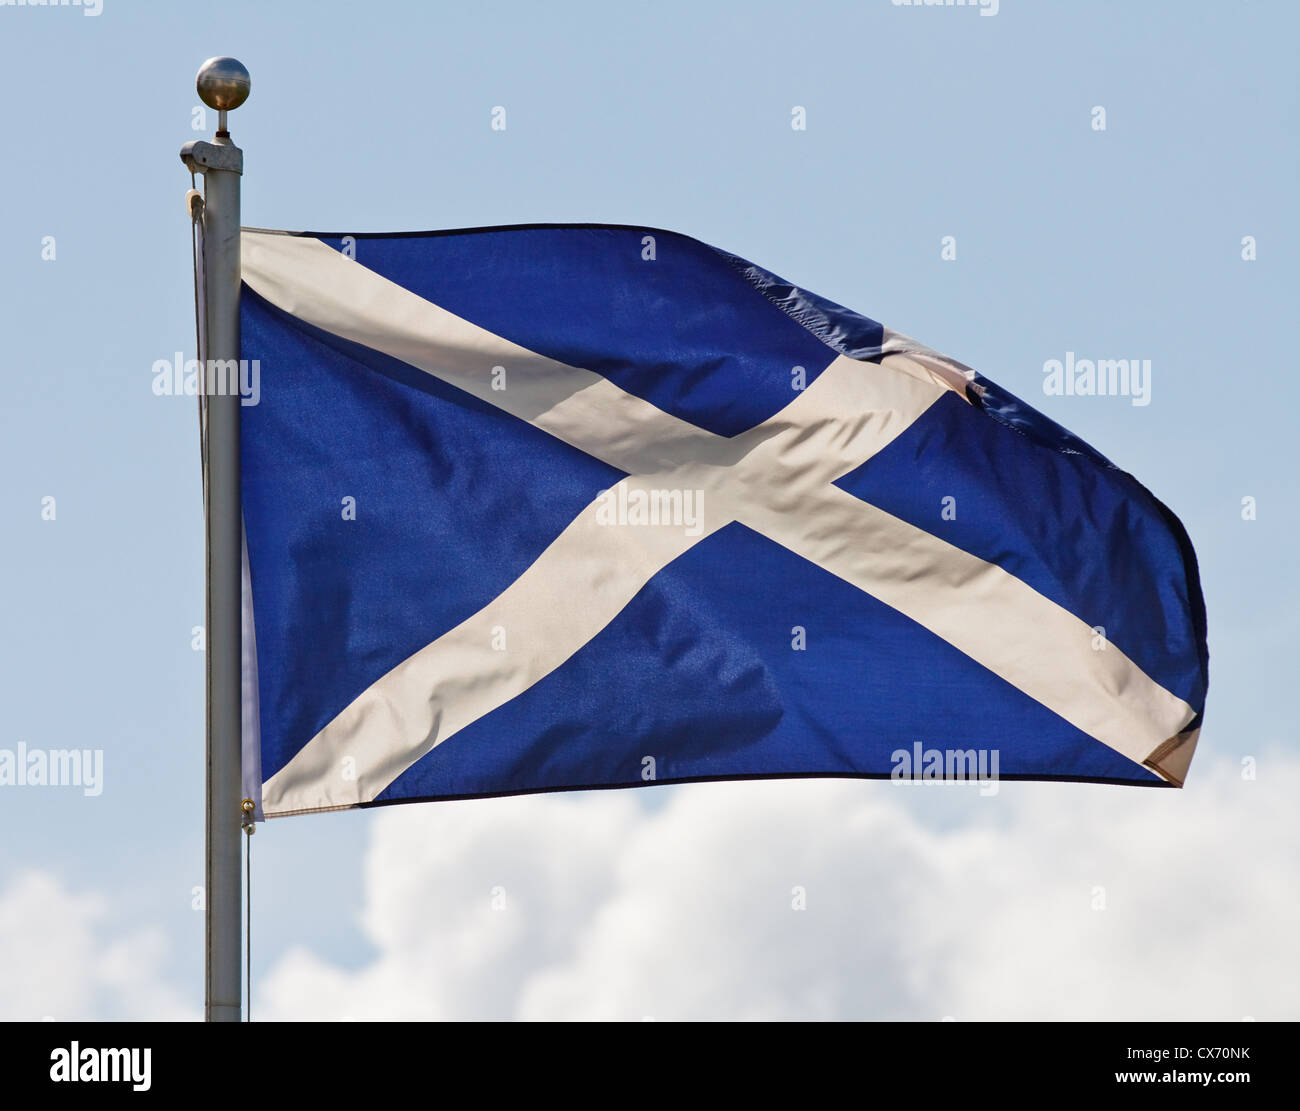 Das Blau Weisse Kreuz Von St Krauselt Sich Andrew Die Nationalflagge Schottlands Im Wind Am Fahnenmast Stockfotografie Alamy